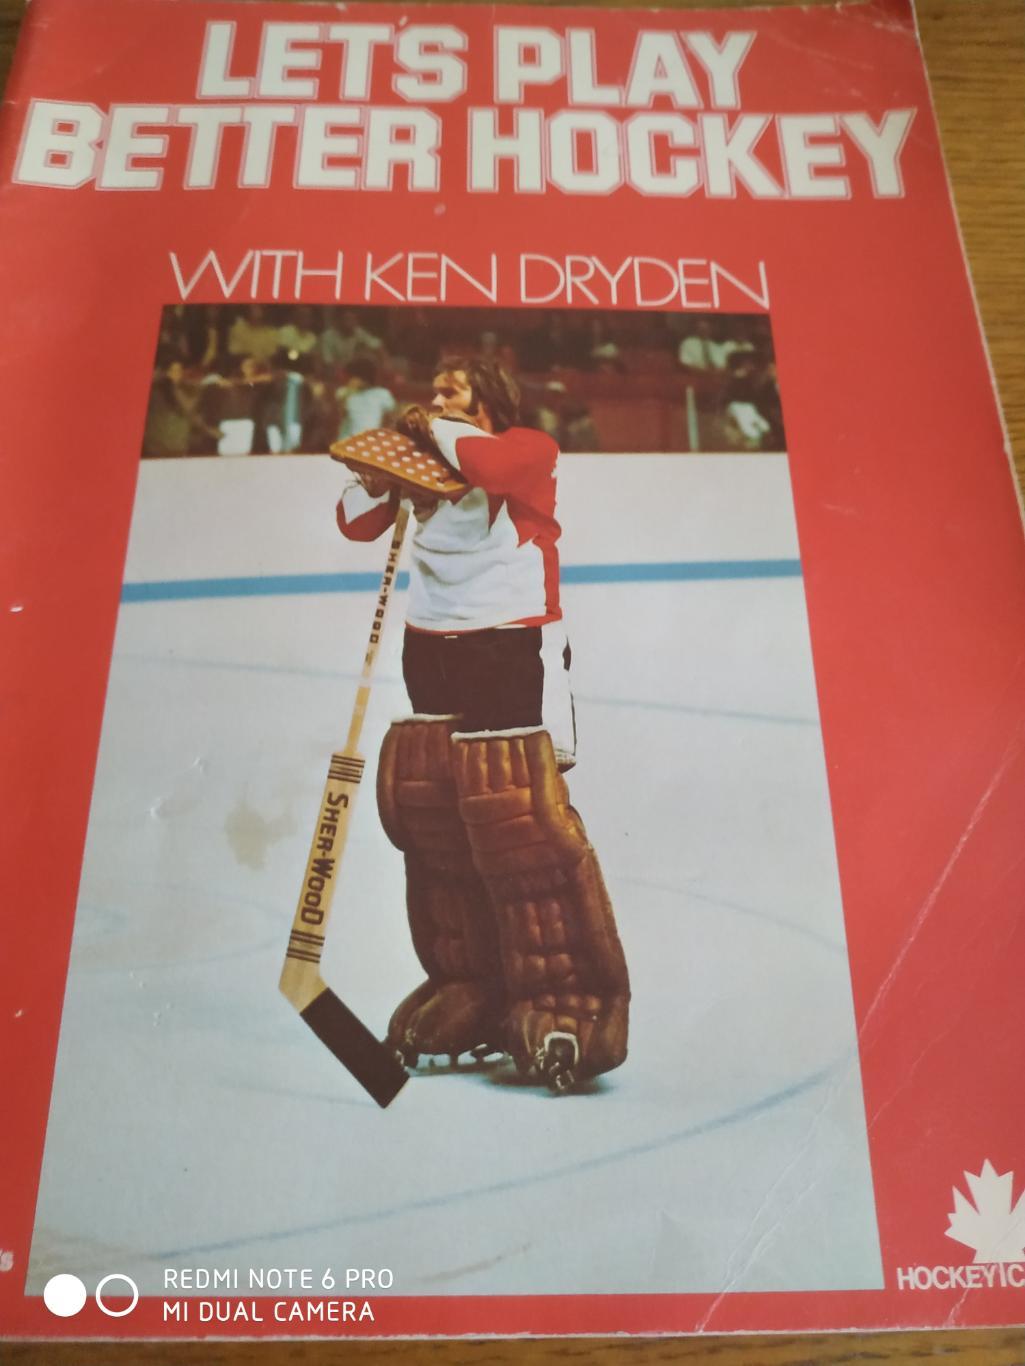 ХОККЕЙ КНИГА НХЛ NHL LETS PLAY BETTER HOCKEY 1973